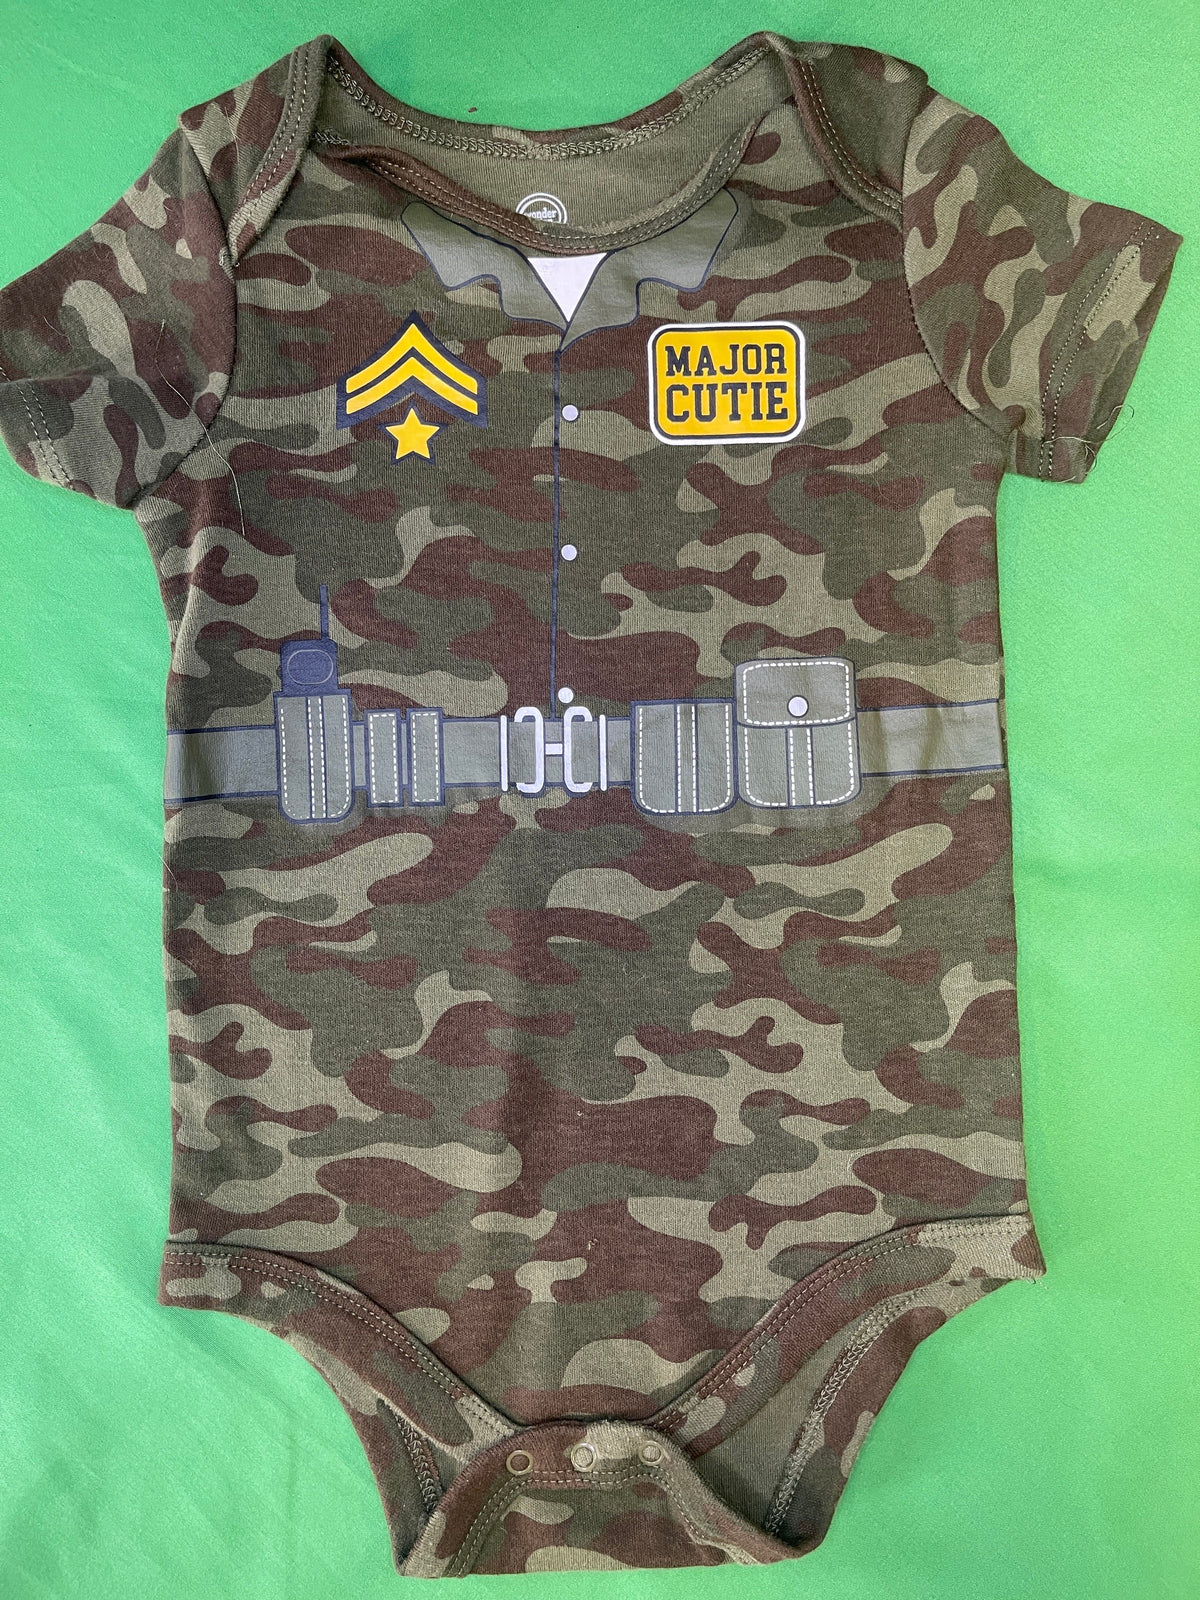 USA Army Major Cutie Camo Bodysuit/Vest 24 months